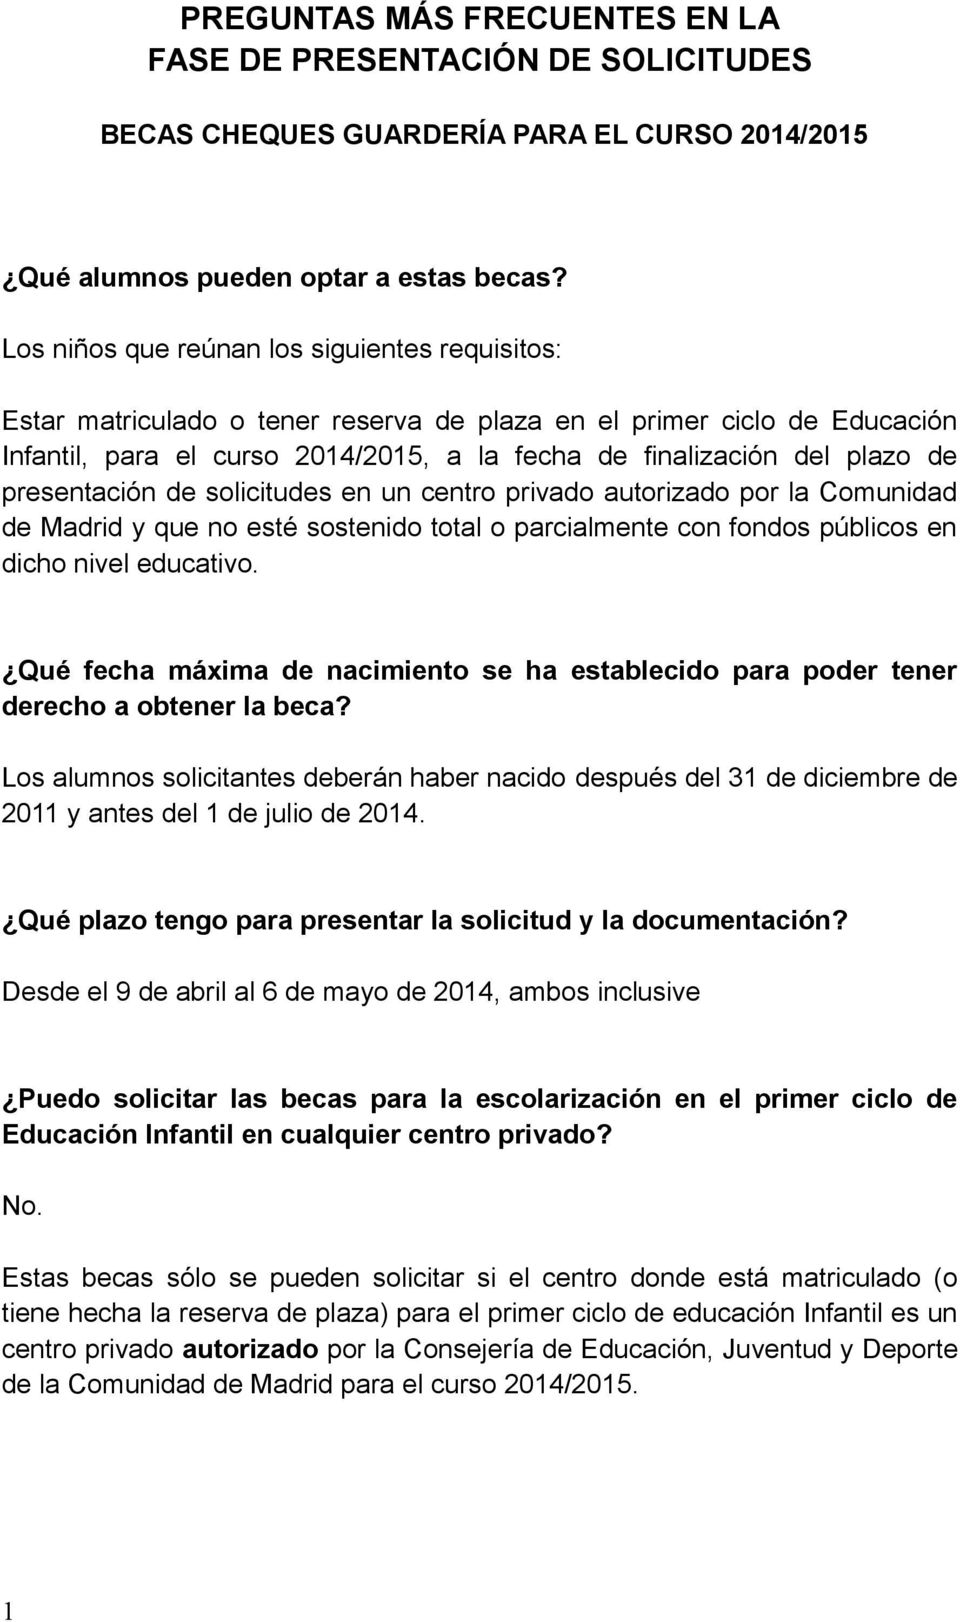 presentación de solicitudes en un centro privado autorizado por la Comunidad de Madrid y que no esté sostenido total o parcialmente con fondos públicos en dicho nivel educativo.